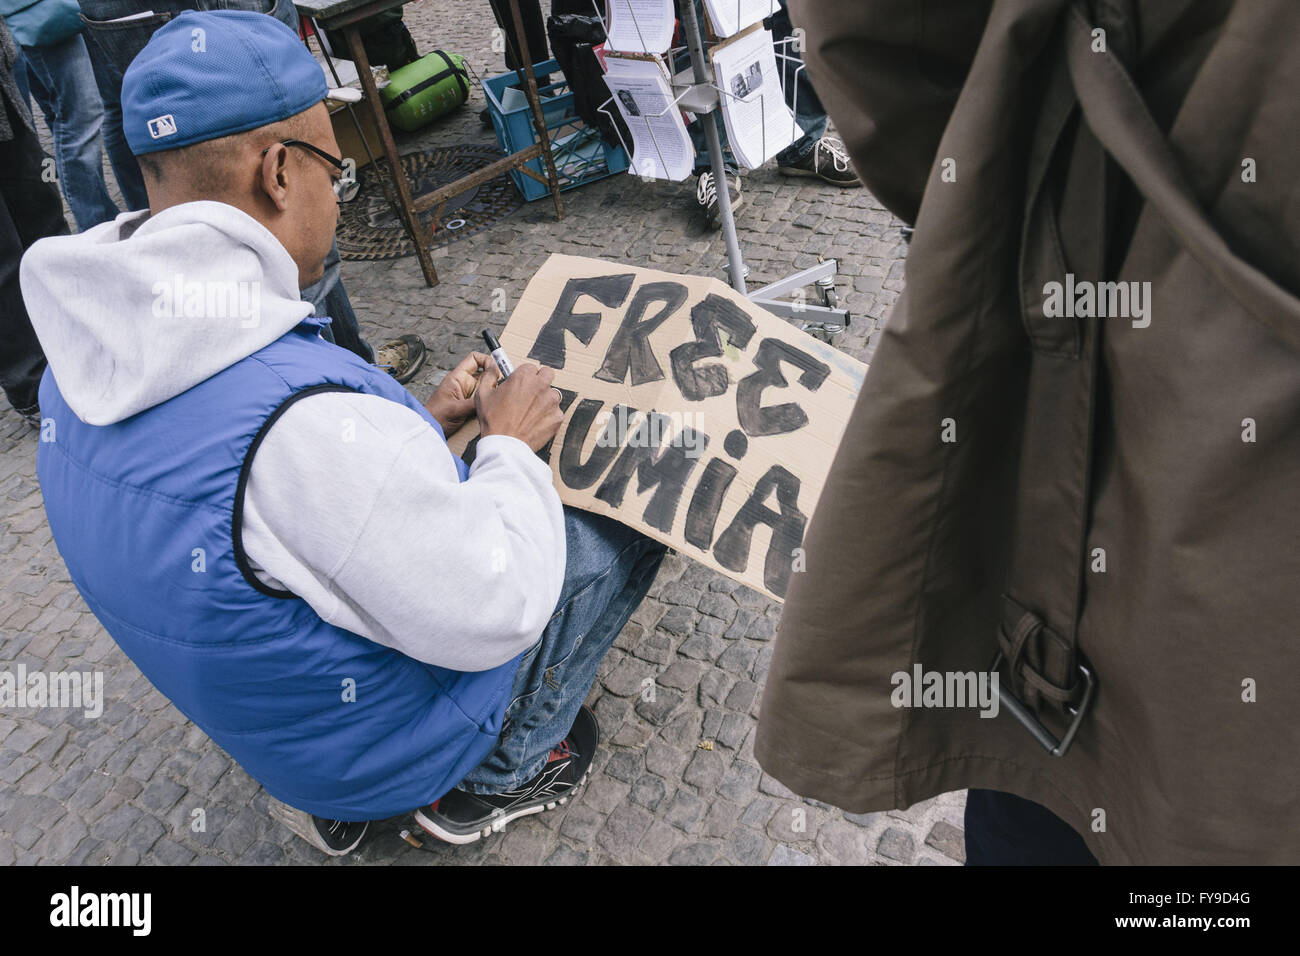 Berlin, Berlin, Allemagne. Apr 24, 2016. Les manifestants pendant le rassemblement pour la libération de Mumia Abu-Jamal et le soutien de l'affaire Black vit déplacement devant la porte de Brandebourg à côté de l'ambassade des États-Unis à Berlin sous la devise 'Libérer MUMIA - libérez-les tous". Les protestants se réunissent à l'occasion du 62ème anniversaire de Mumia Abu-Jamal, un ancien détenu à mort et Black Panther condamné en 1981 dans le meurtre de DANIEL FAULKNER agent de police de Philadelphie. La cinquième visite en Allemagne par le président américain Barack Obama à Hanovre commence aussi le 24 avril 2016. (Crédit Image : © Jan Scheunert vi Banque D'Images